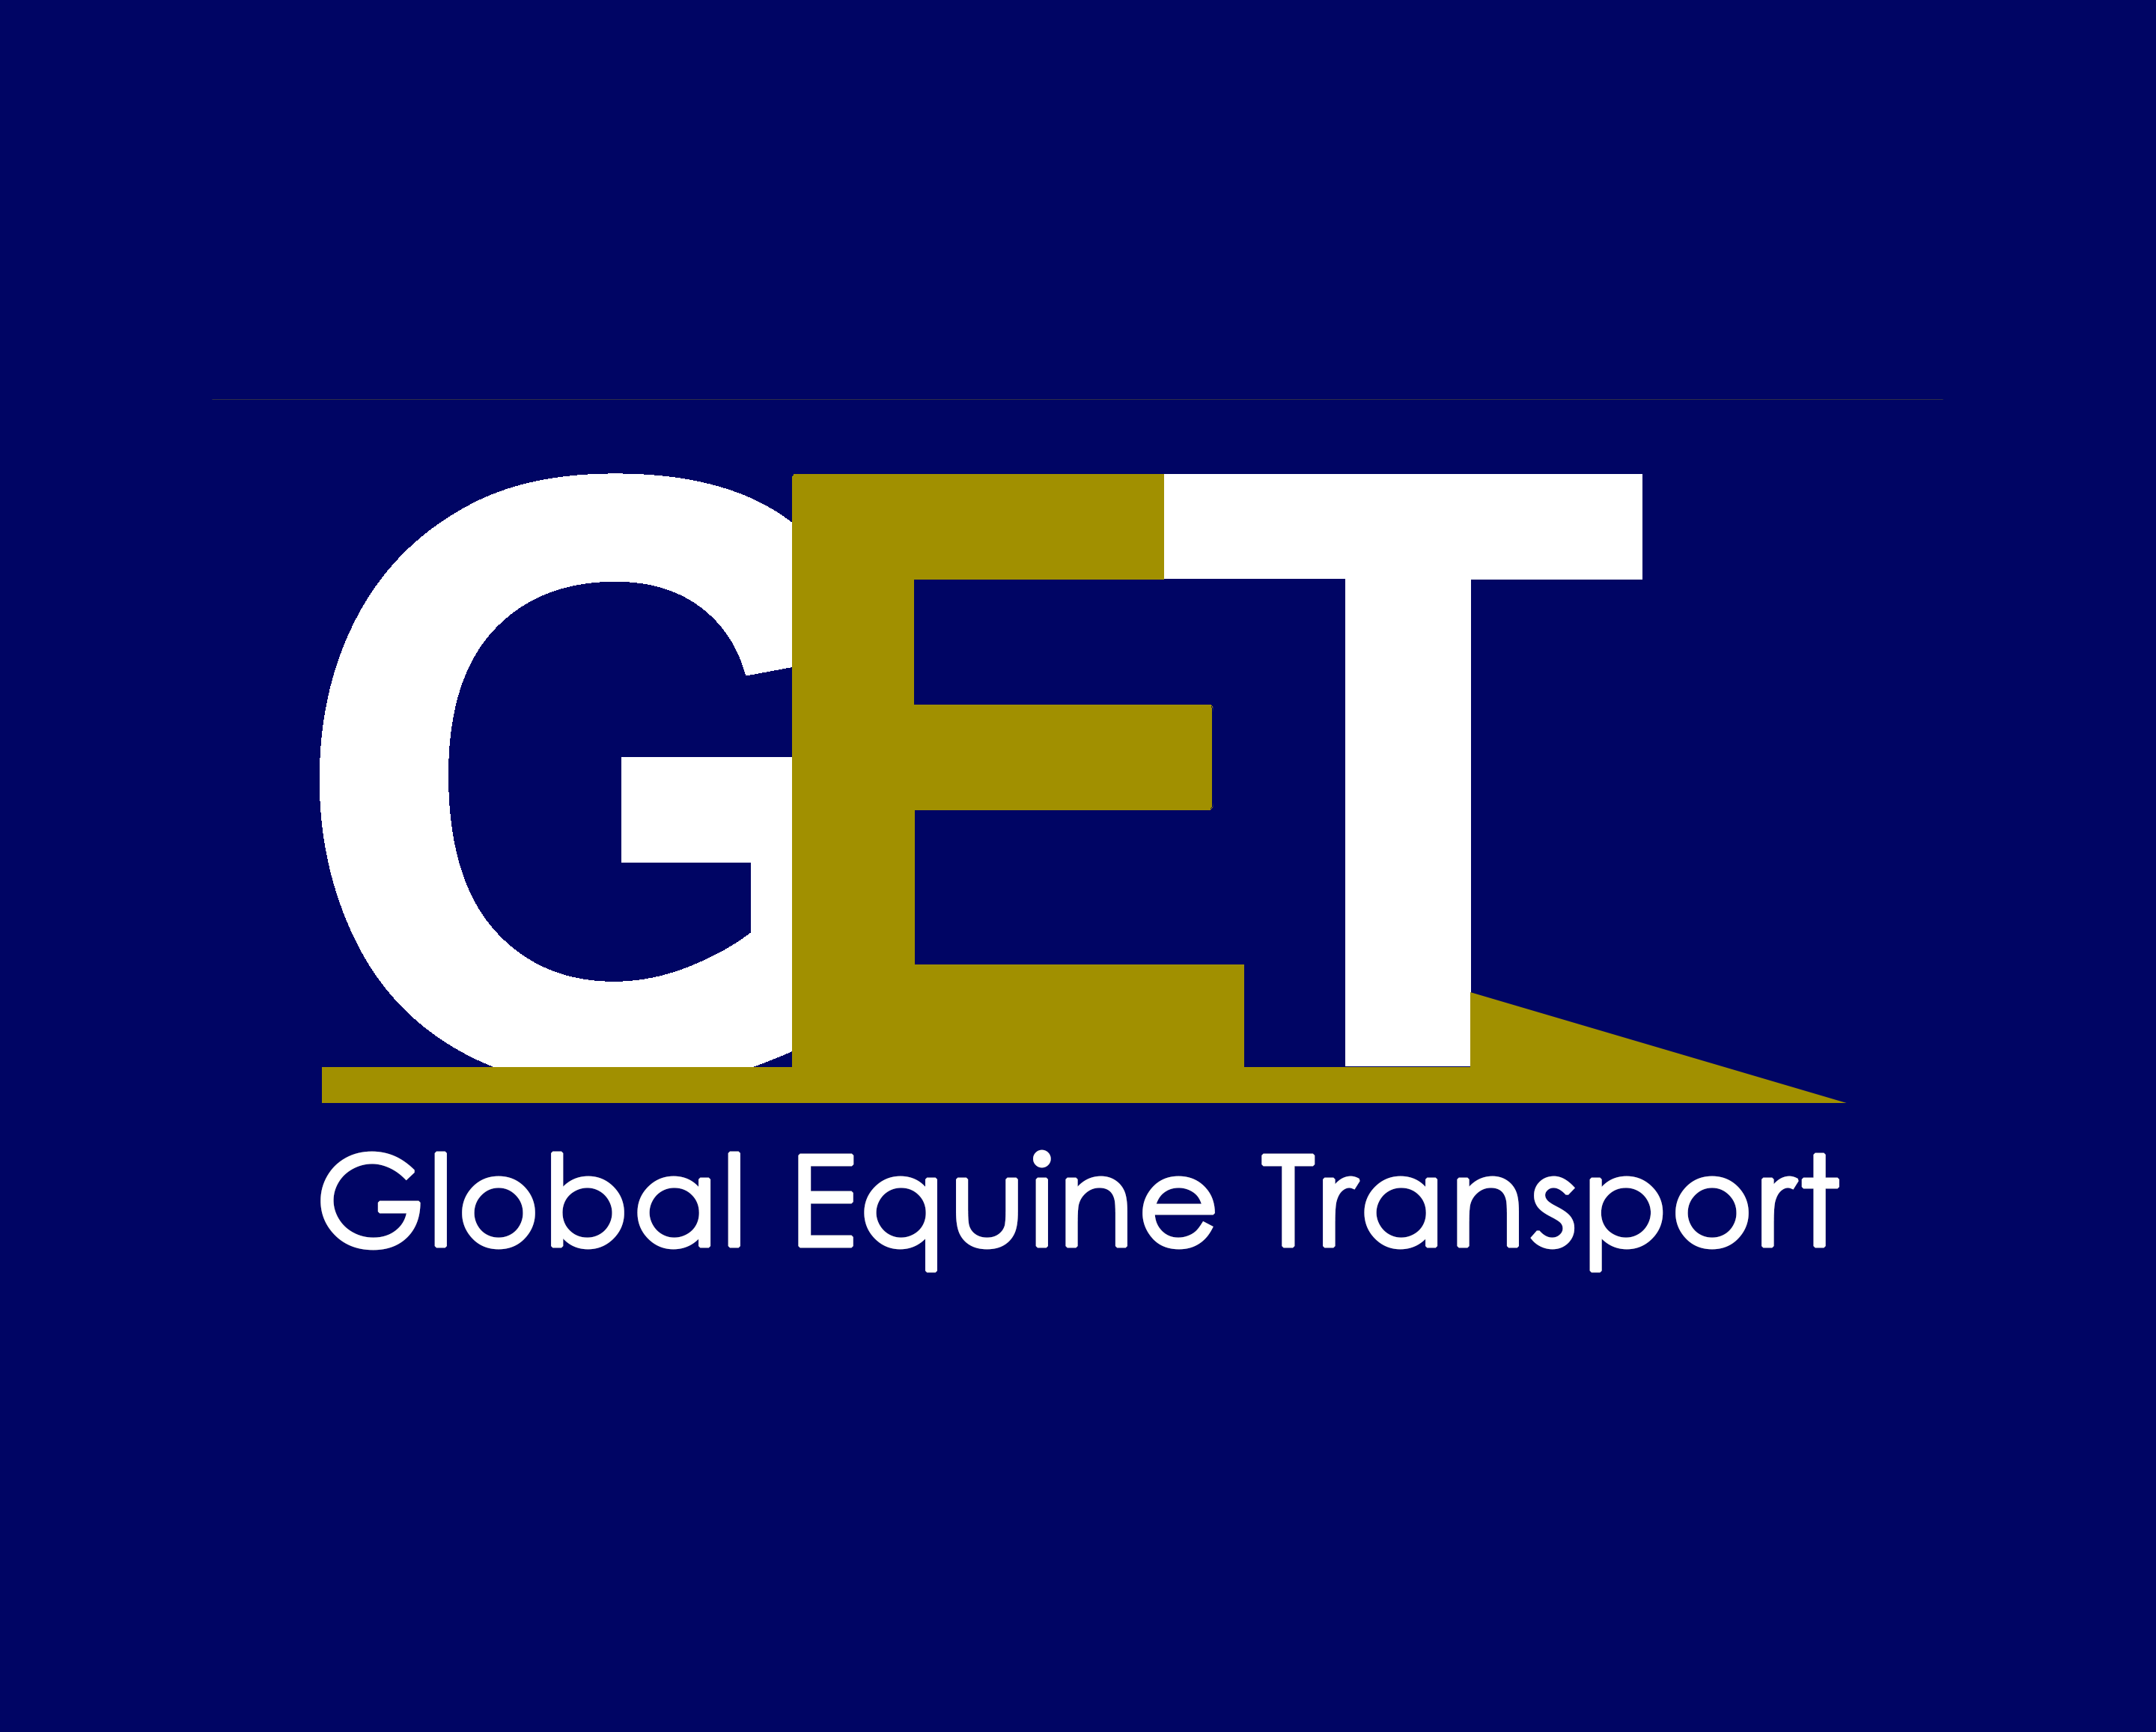 Global Equine Transport